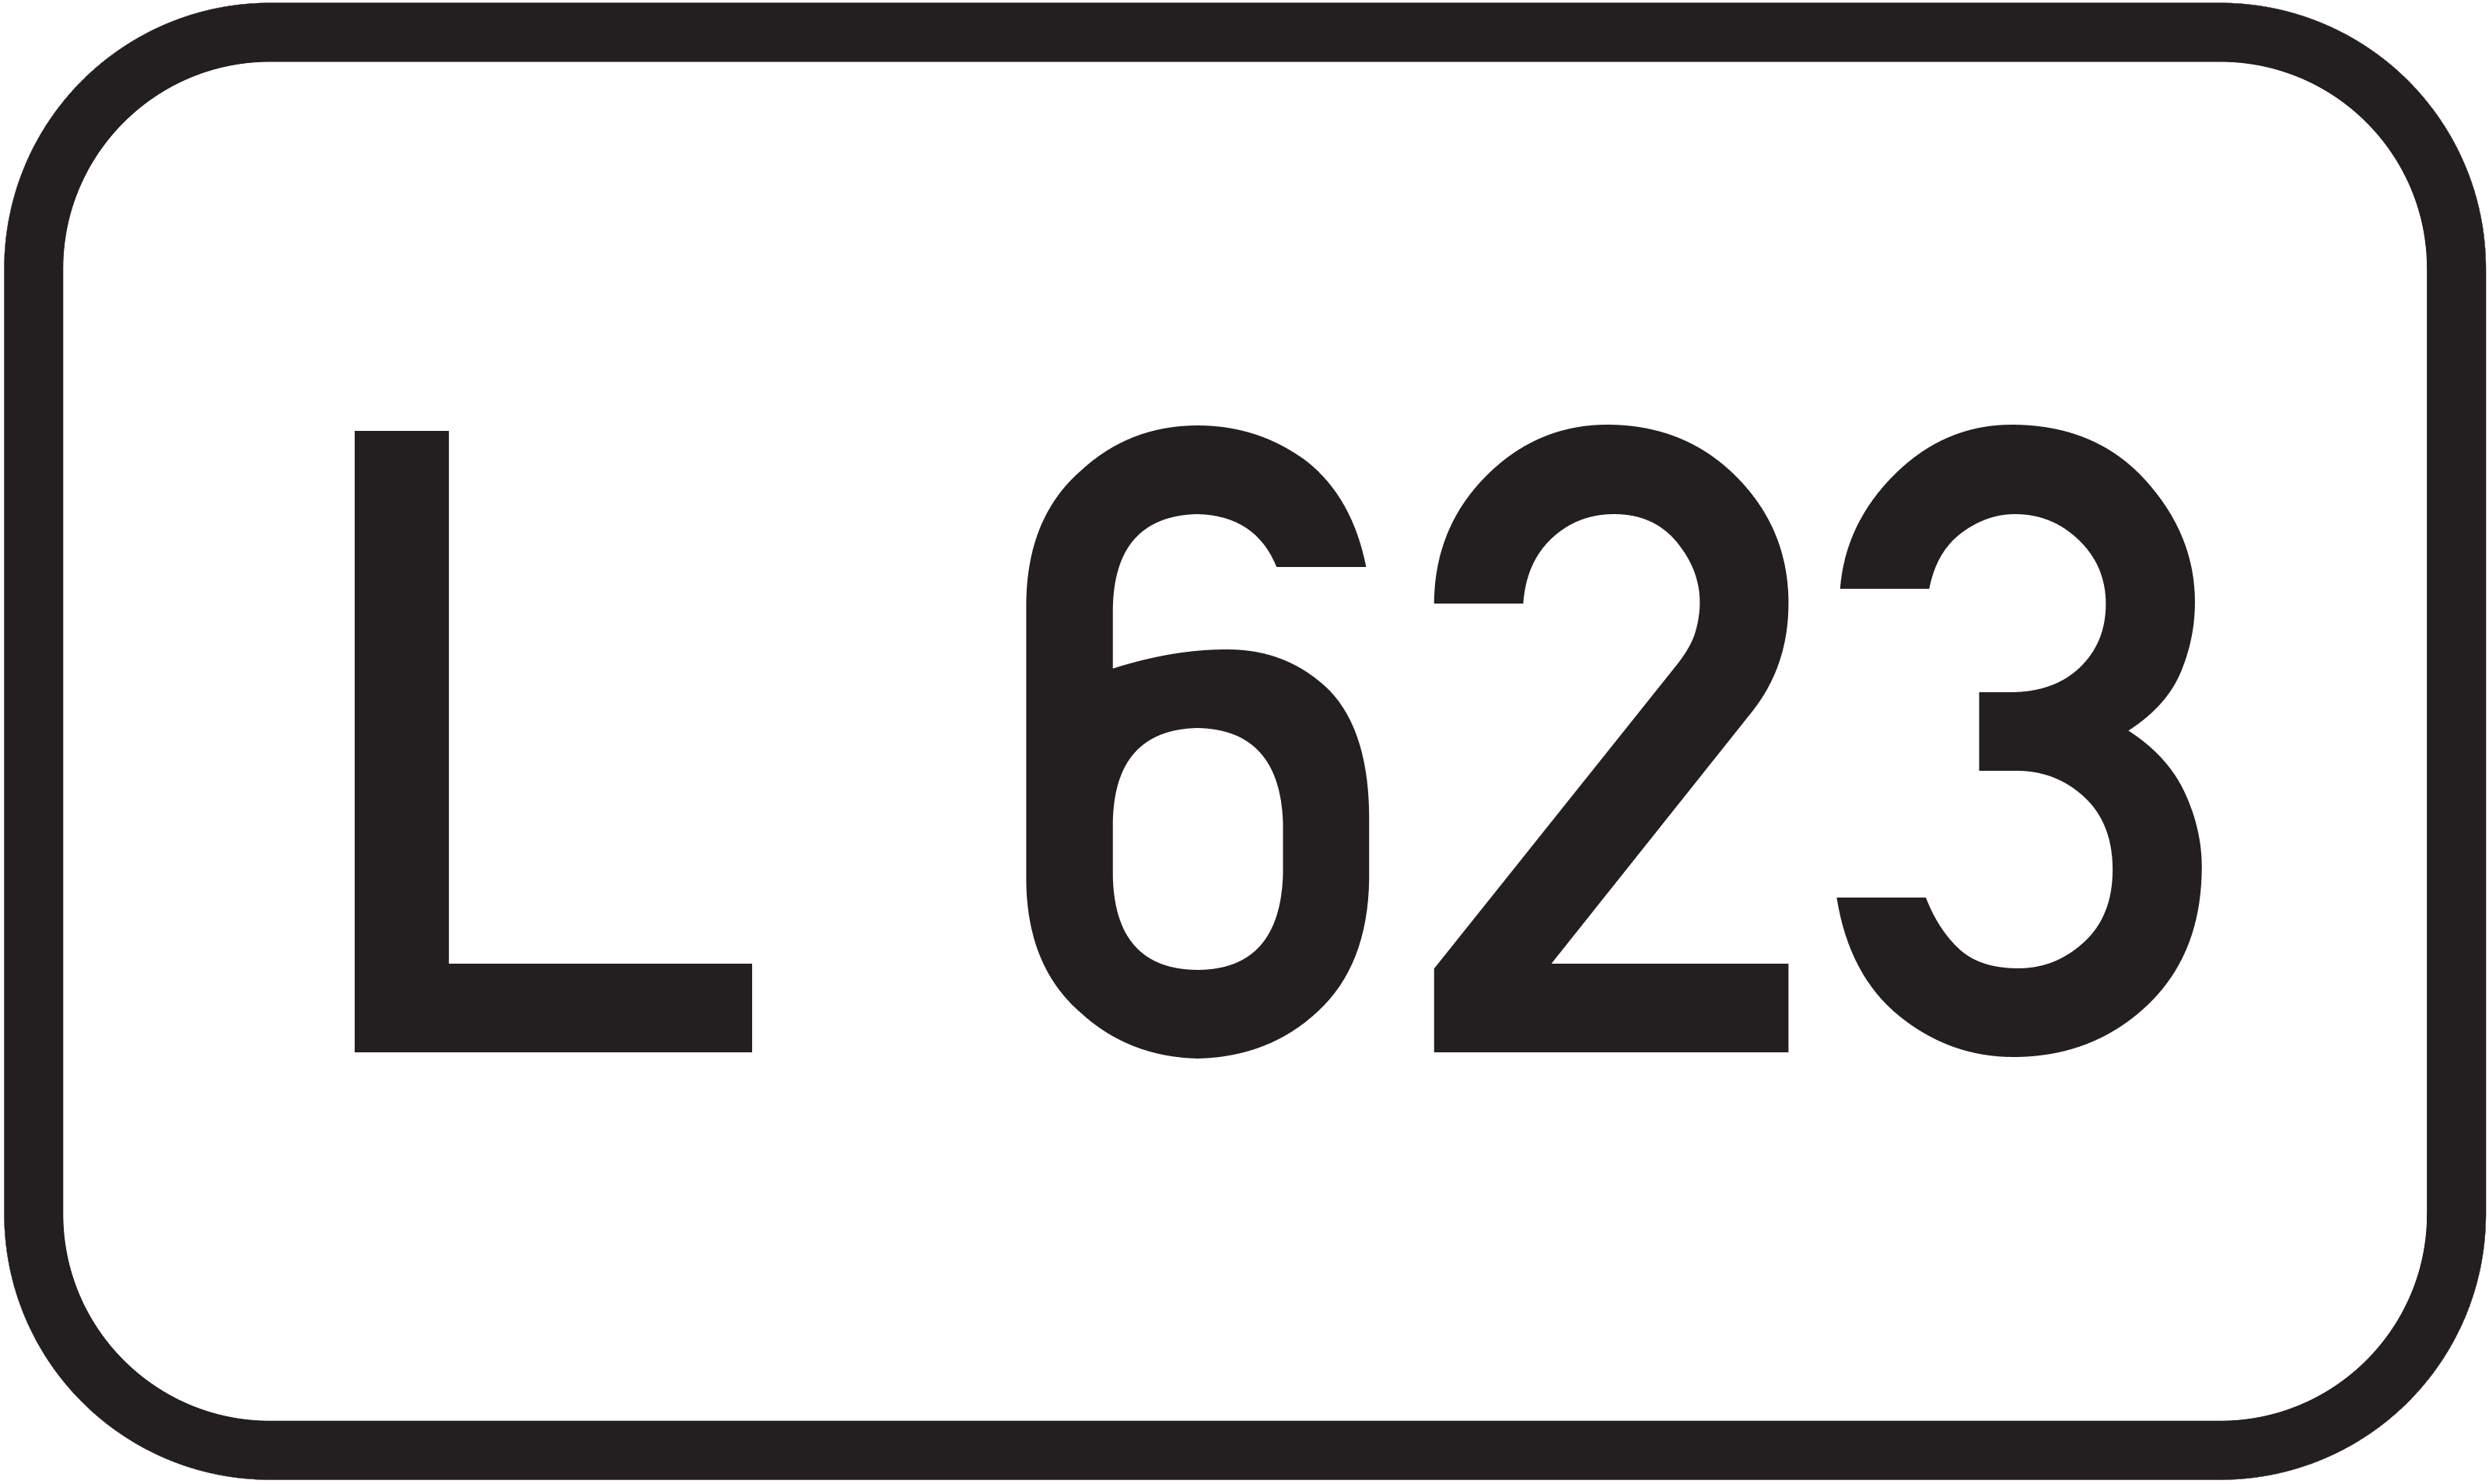 Landesstraße L 623